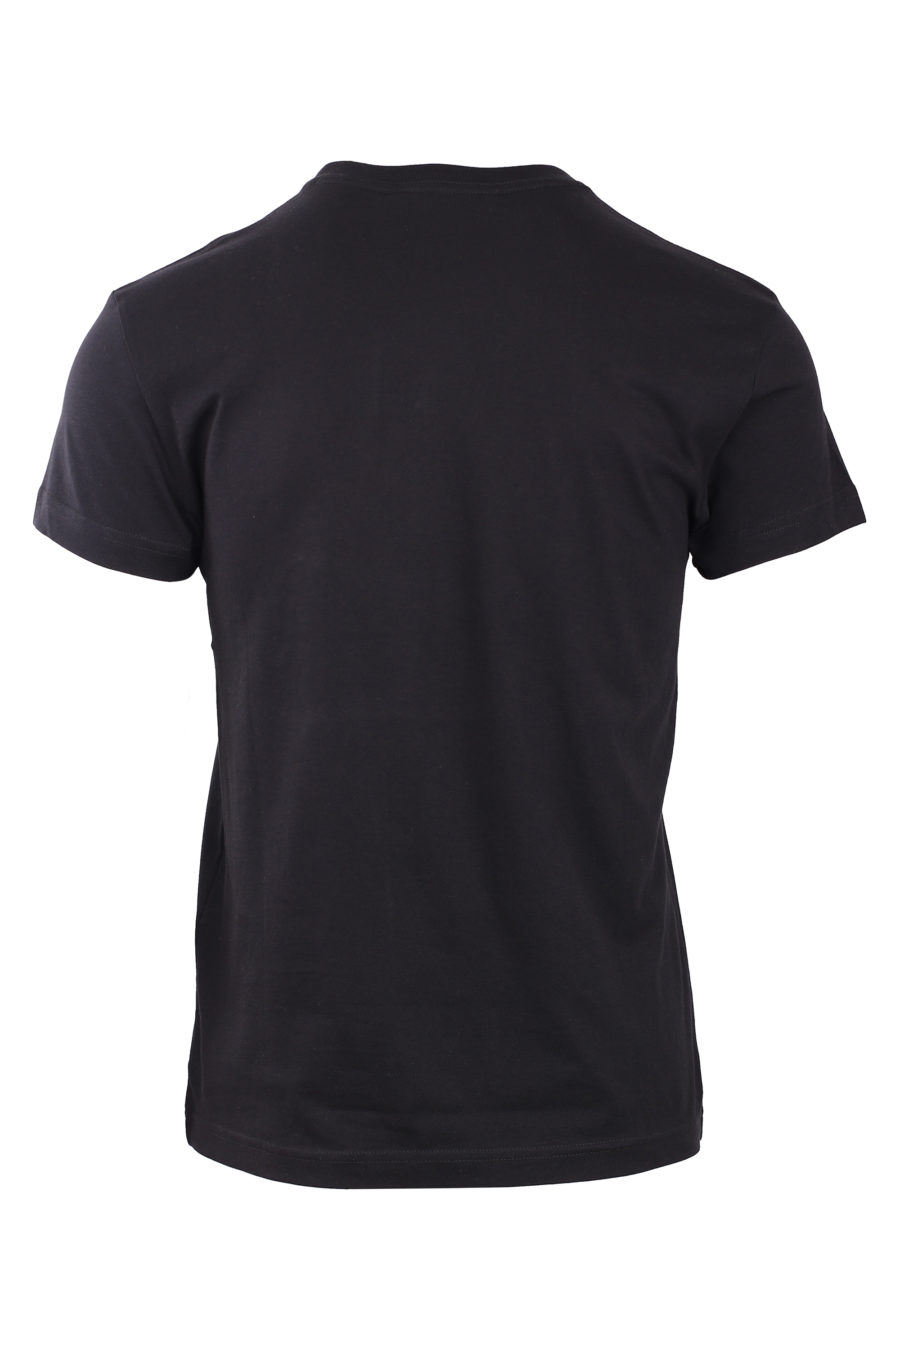 T-shirt preta com logótipo iridescente redondo - IMG 0776